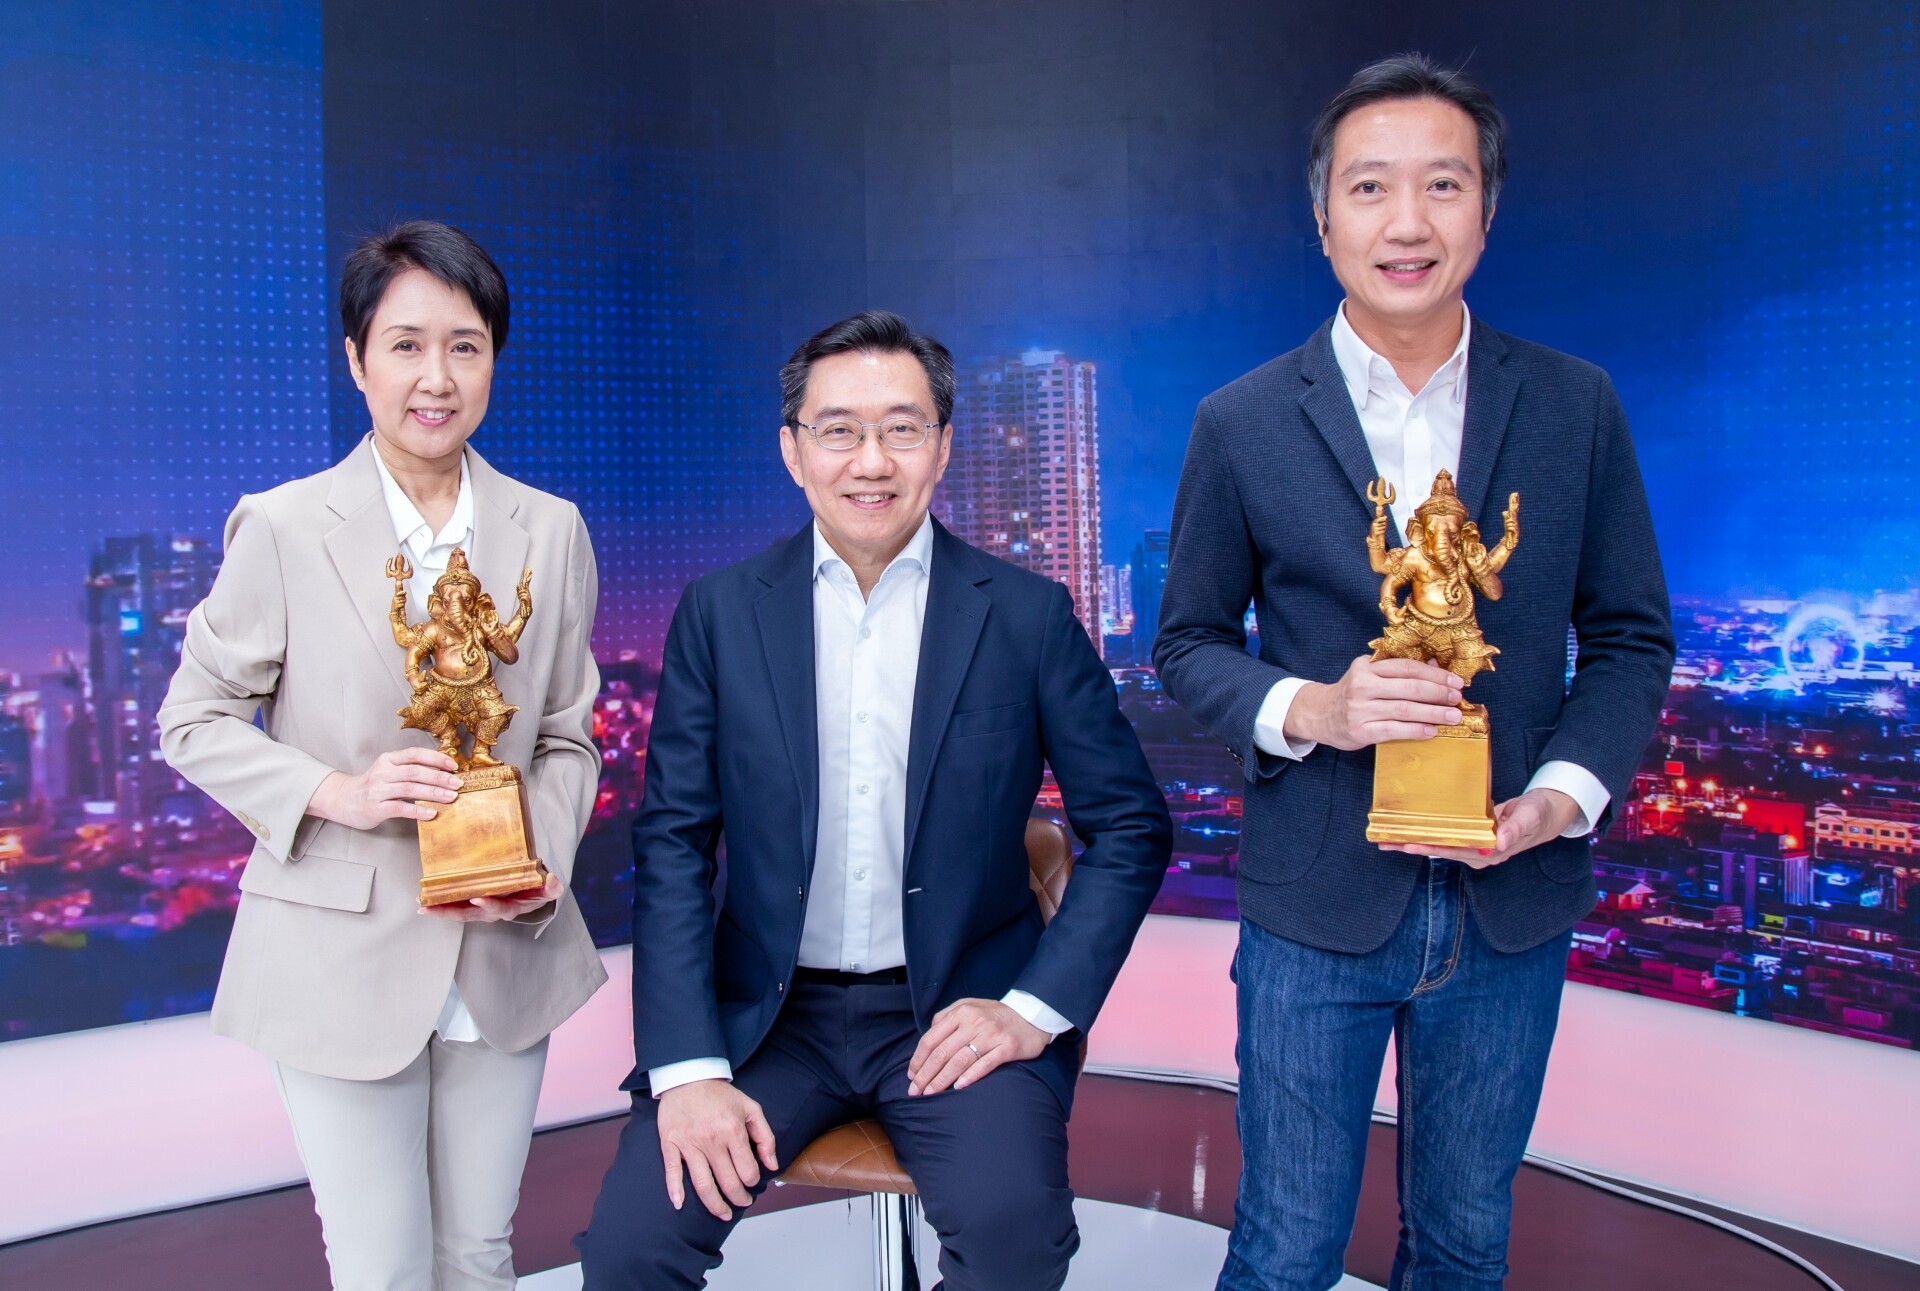 เกียรติยศคนทีวี…กลุ่มทรู คว้า 2 รางวัลแห่งความสำเร็จ "สถานีข่าวดีเด่น" และ "สถานีส่งเสริมภาพยนตร์ไทยดีเด่น" งานประกาศรางวัล "พระพิฆเณศวร์" ครั้งที่ 1 ประจำปี 2566